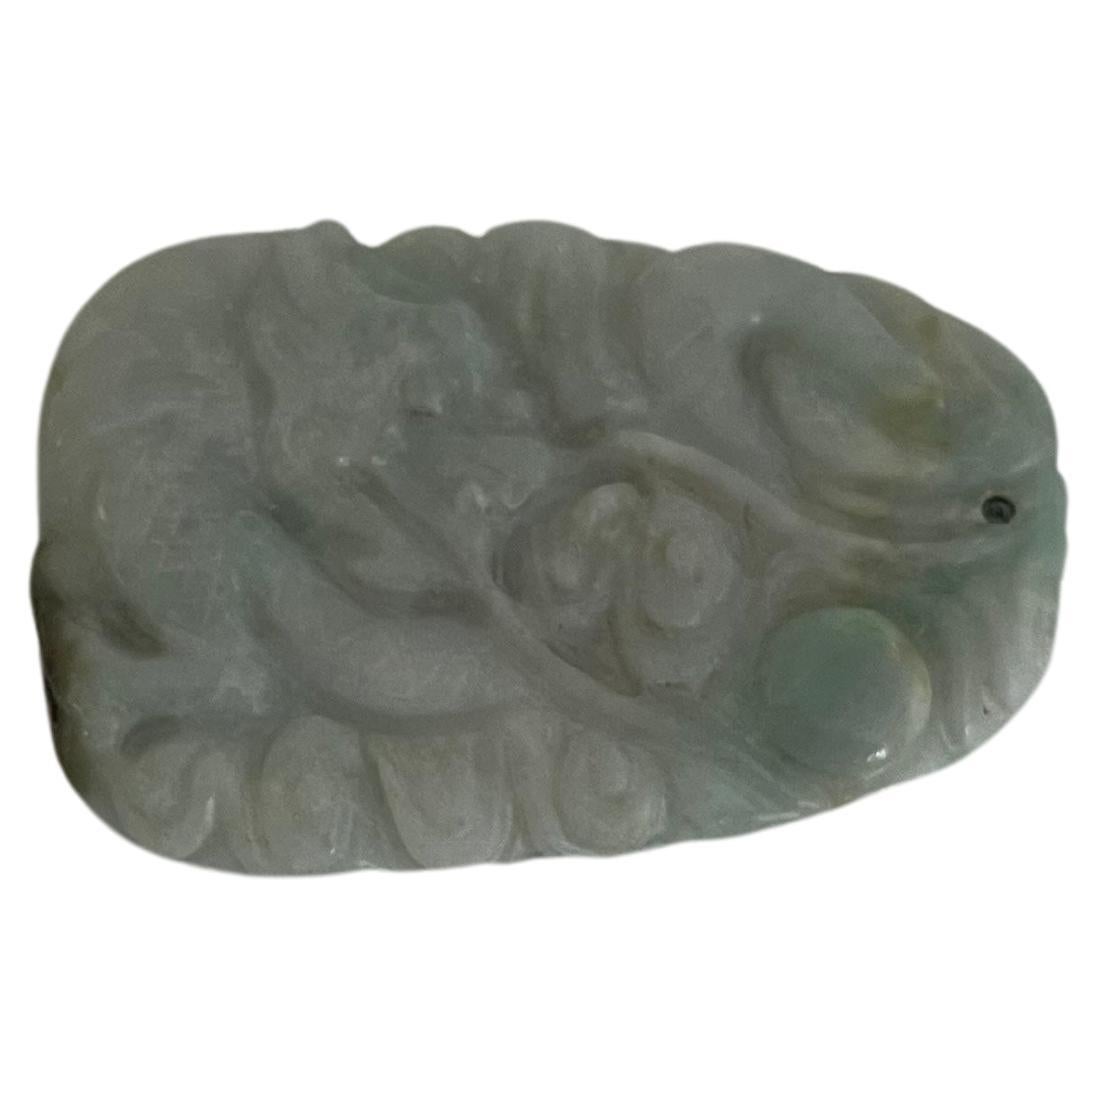 Dies ist eine sehr gute chinesische Jade,  Jadeit / Nephrit Stein-Anhänger, dass wir auf den frühen 19. Jahrhundert, Qing-Periode zu datieren.

Die Jade hat verschiedene Farben innerhalb des Steins, hauptsächlich ein sehr helles Taubengrau mit einem